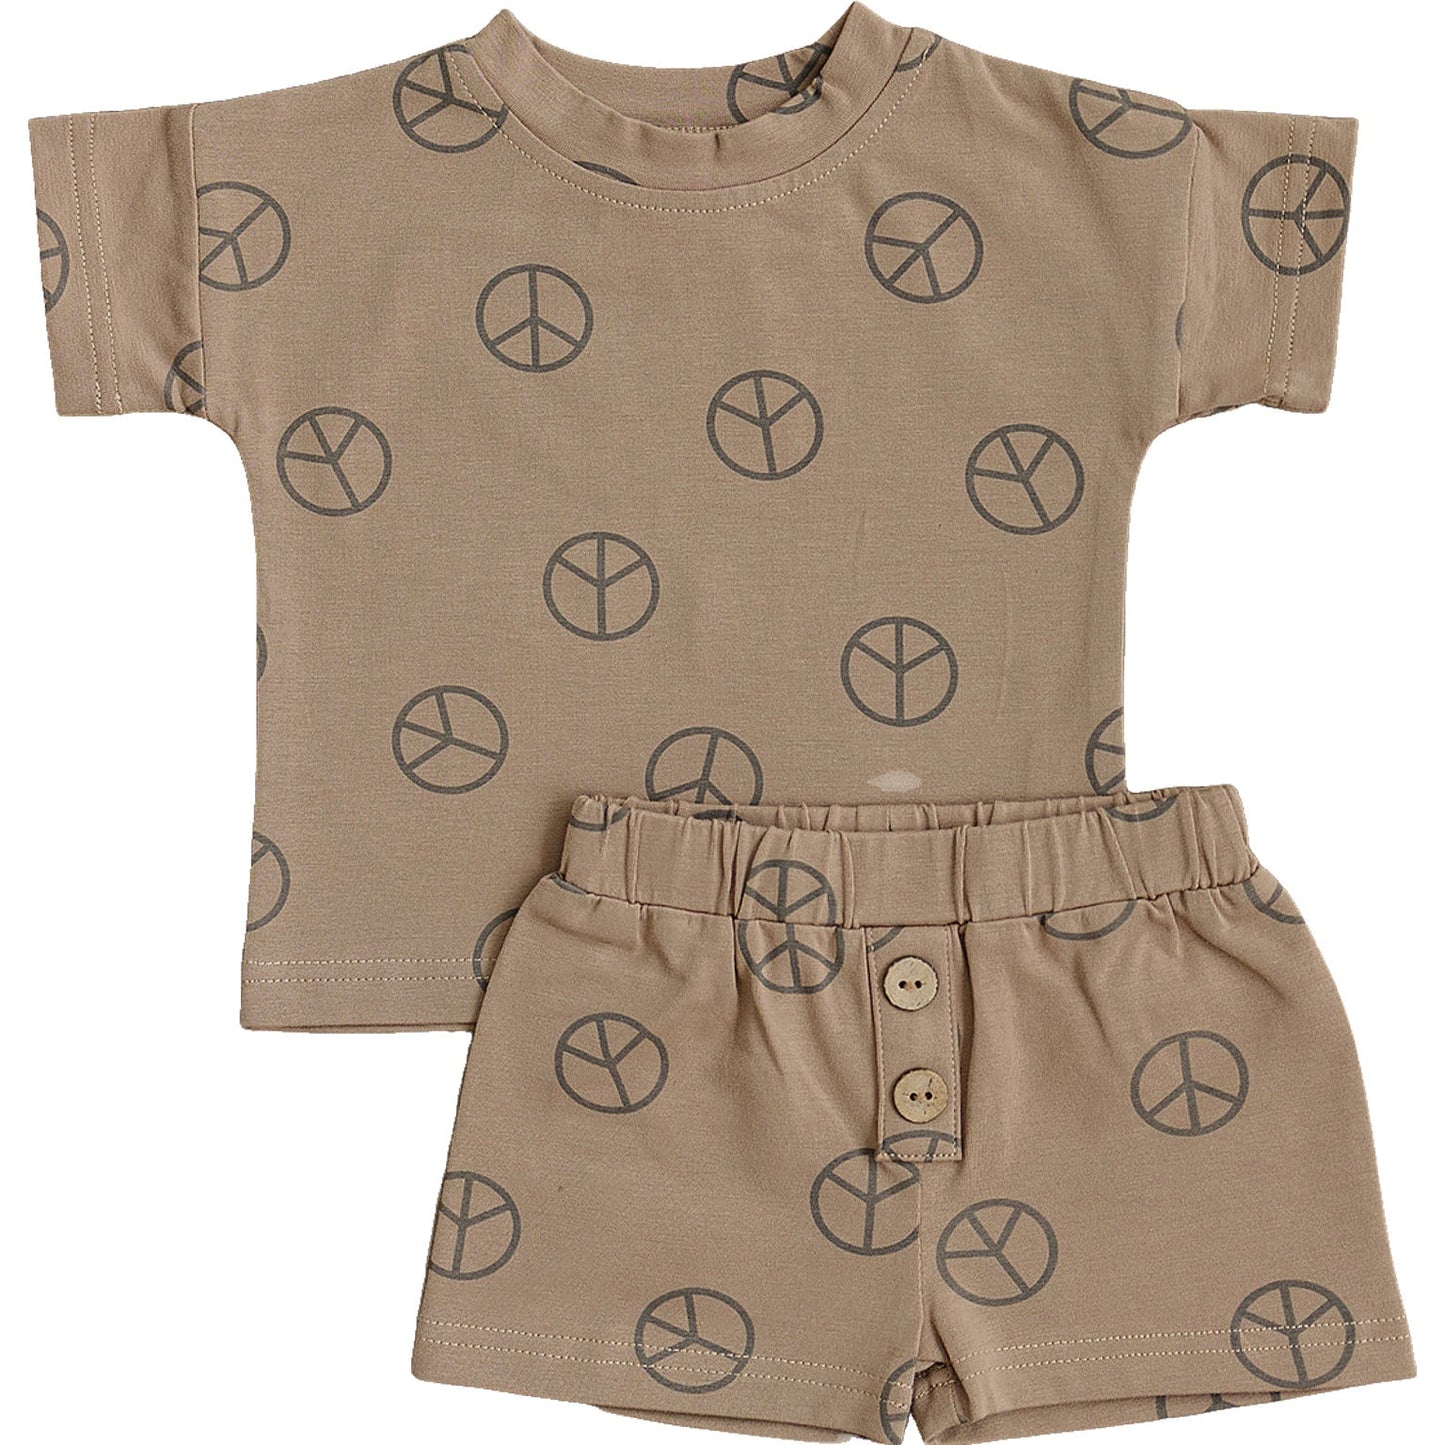 Mebie Baby Peace Button Short Set